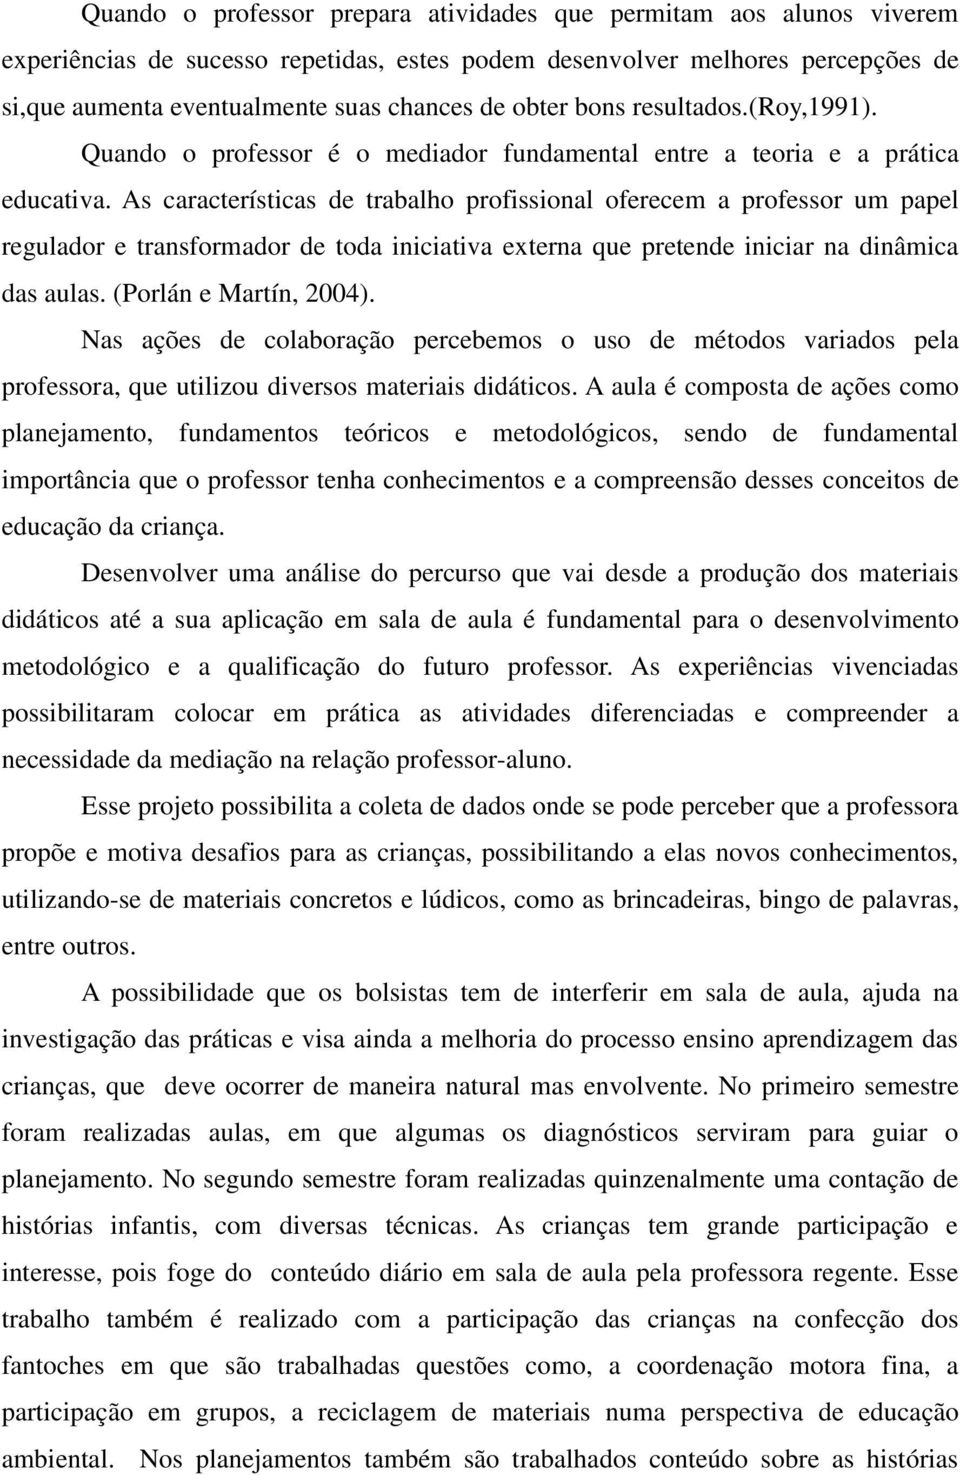 As características de trabalho profissional oferecem a professor um papel regulador e transformador de toda iniciativa externa que pretende iniciar na dinâmica das aulas. (Porlán e Martín, 2004).